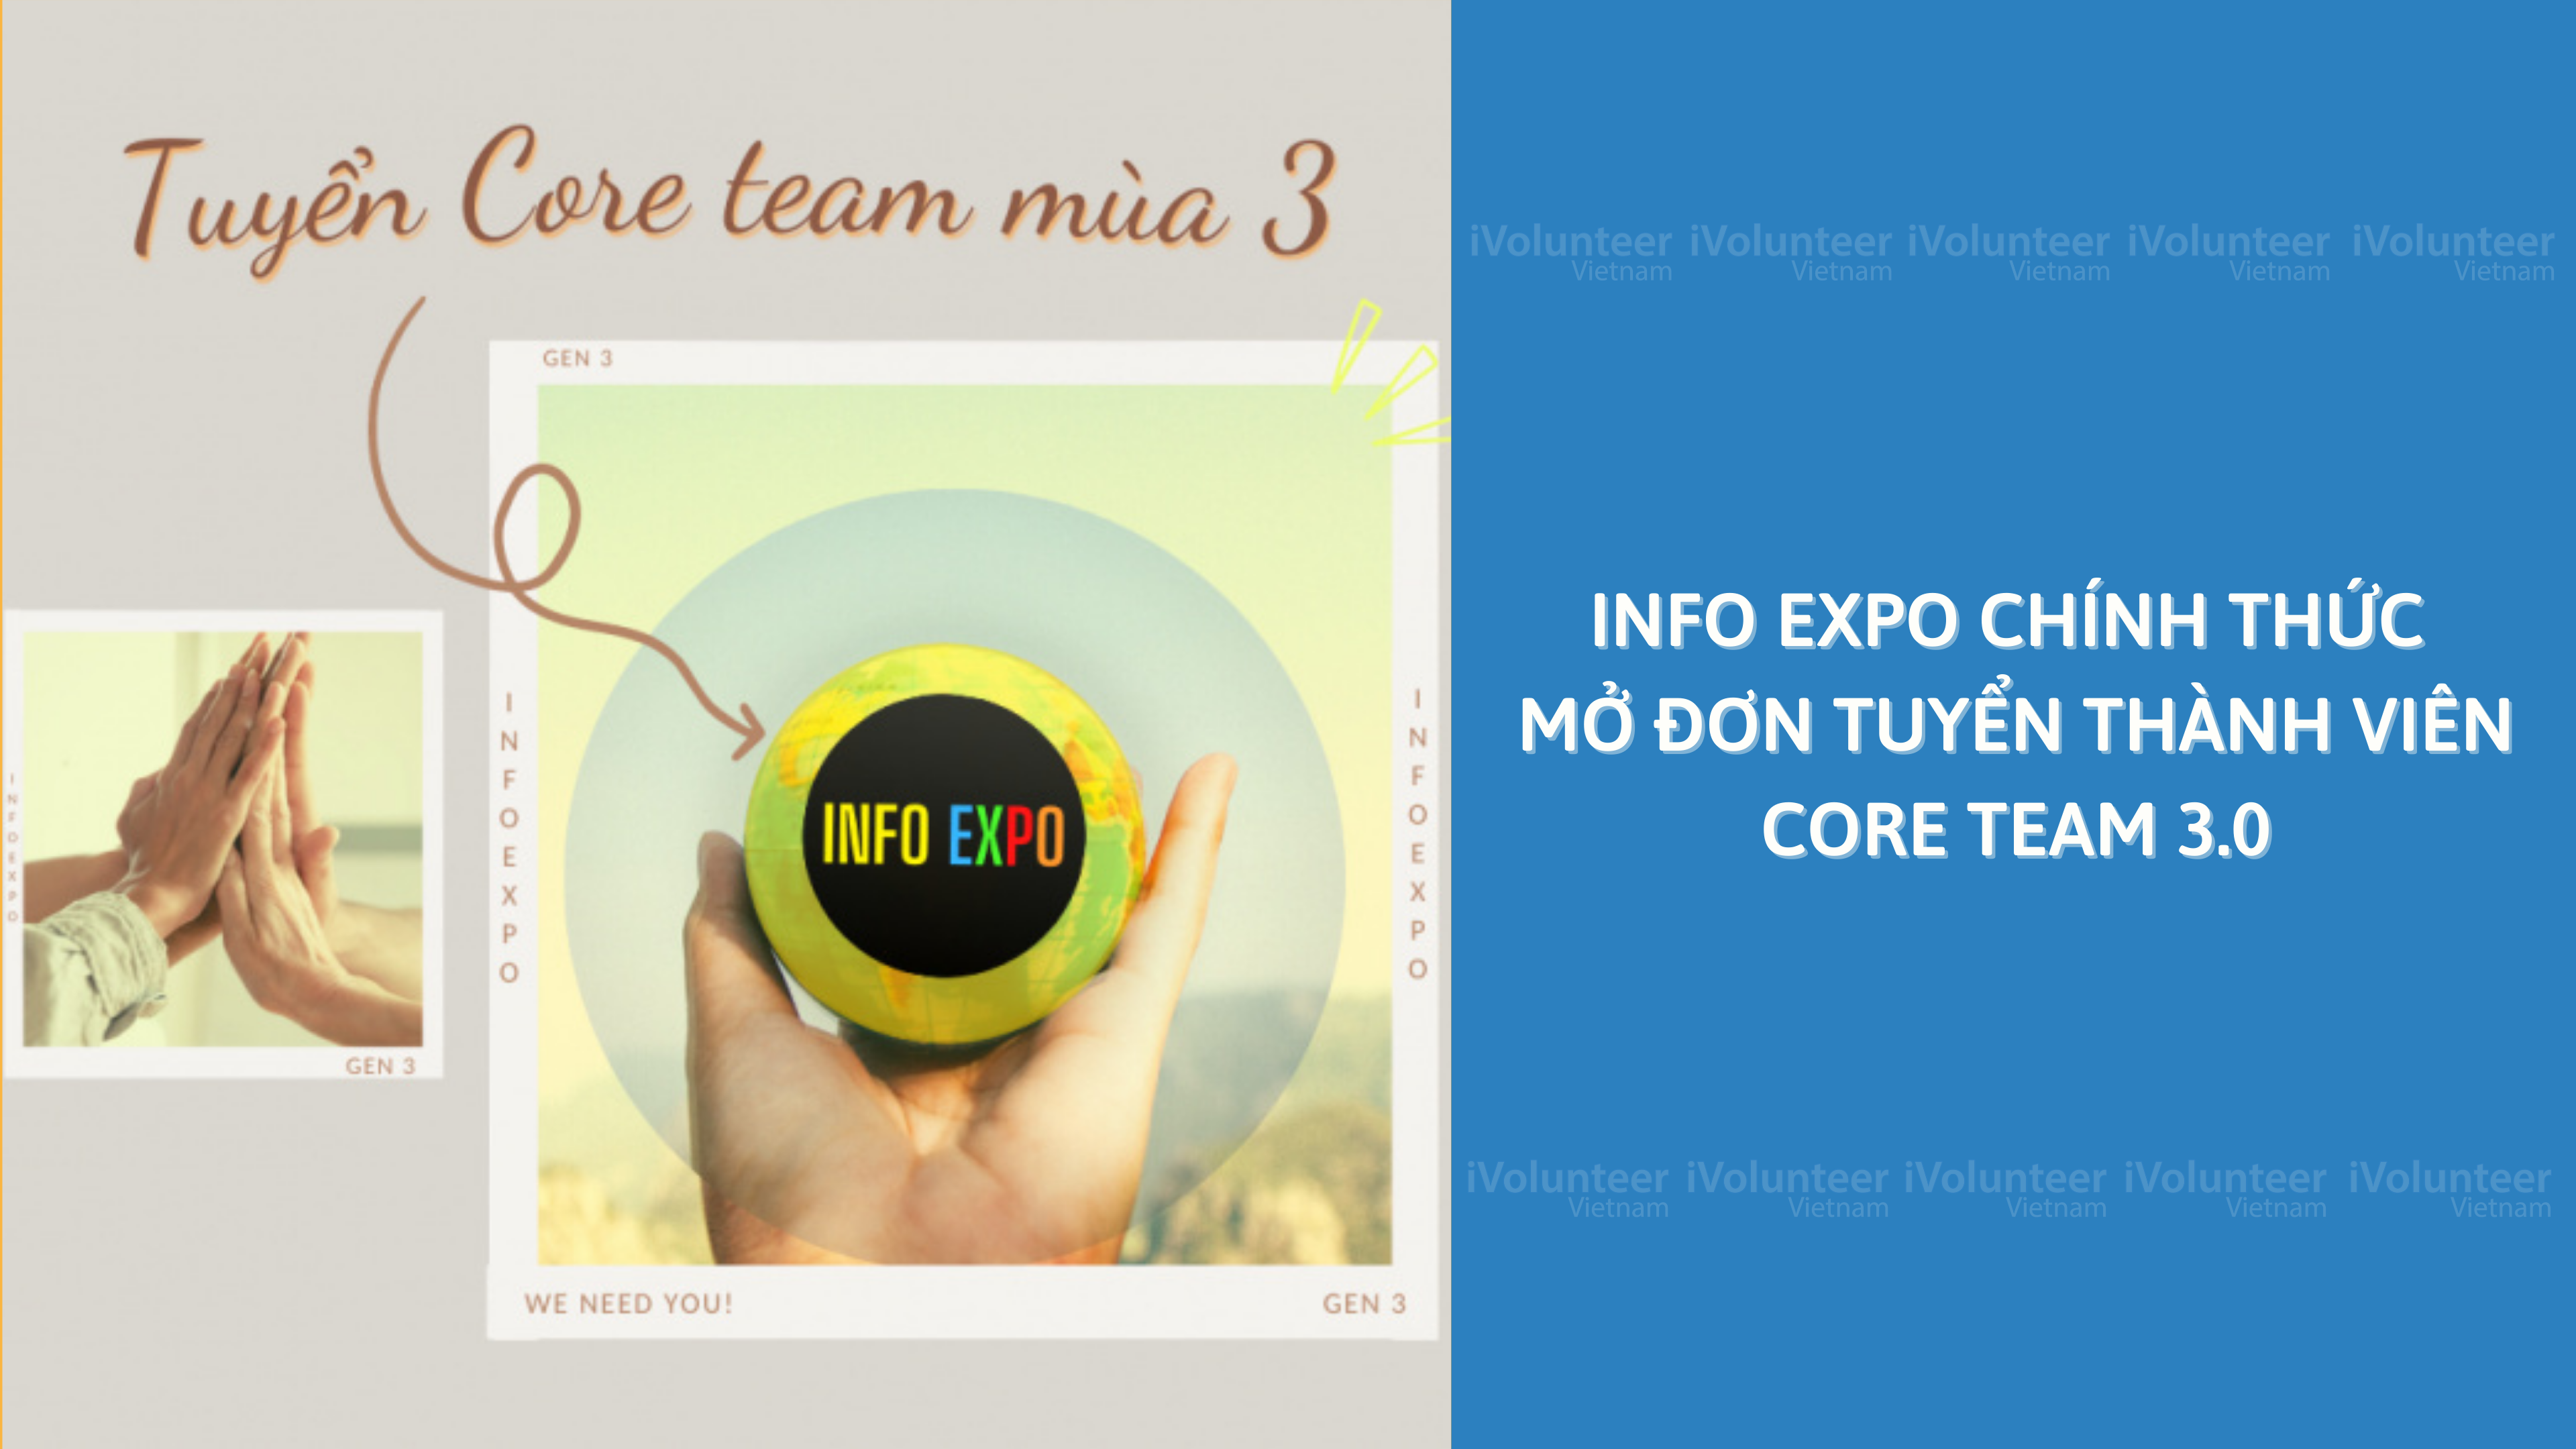 Info Expo Chính Thức Mở đơn Tuyển Thành Viên Core Team 3.0